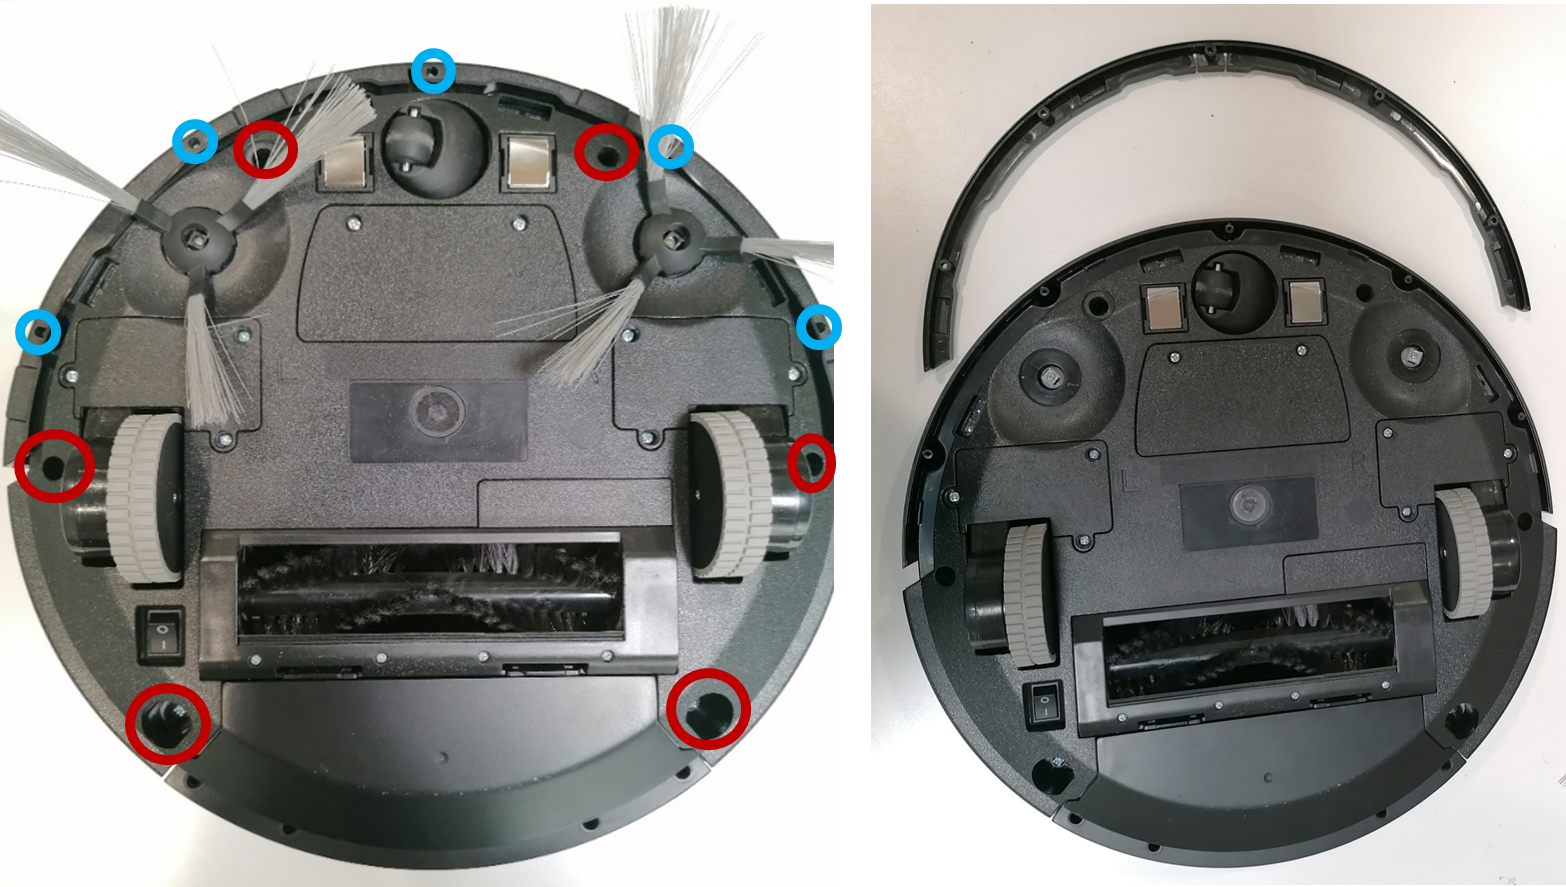 PACK de pièces détachées pour robot aspirateur NETBOT S15 2.0 - Create